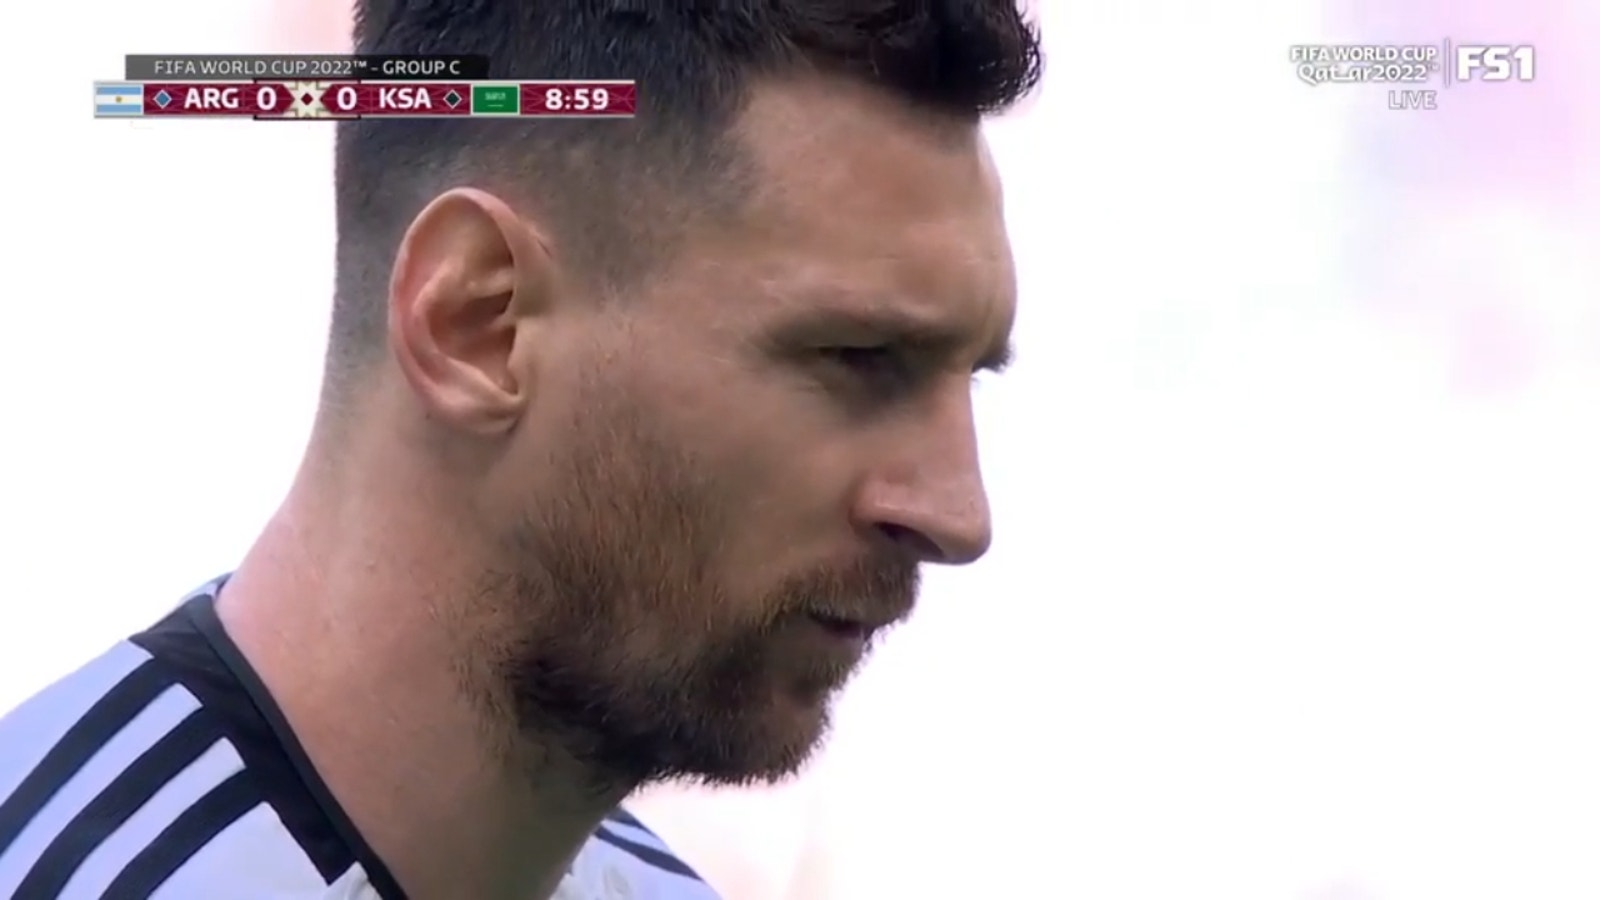 Lionel Messi strzelił karnego w 10. minucie i dał Argentynie prowadzenie 1:0 nad Arabią Saudyjską.